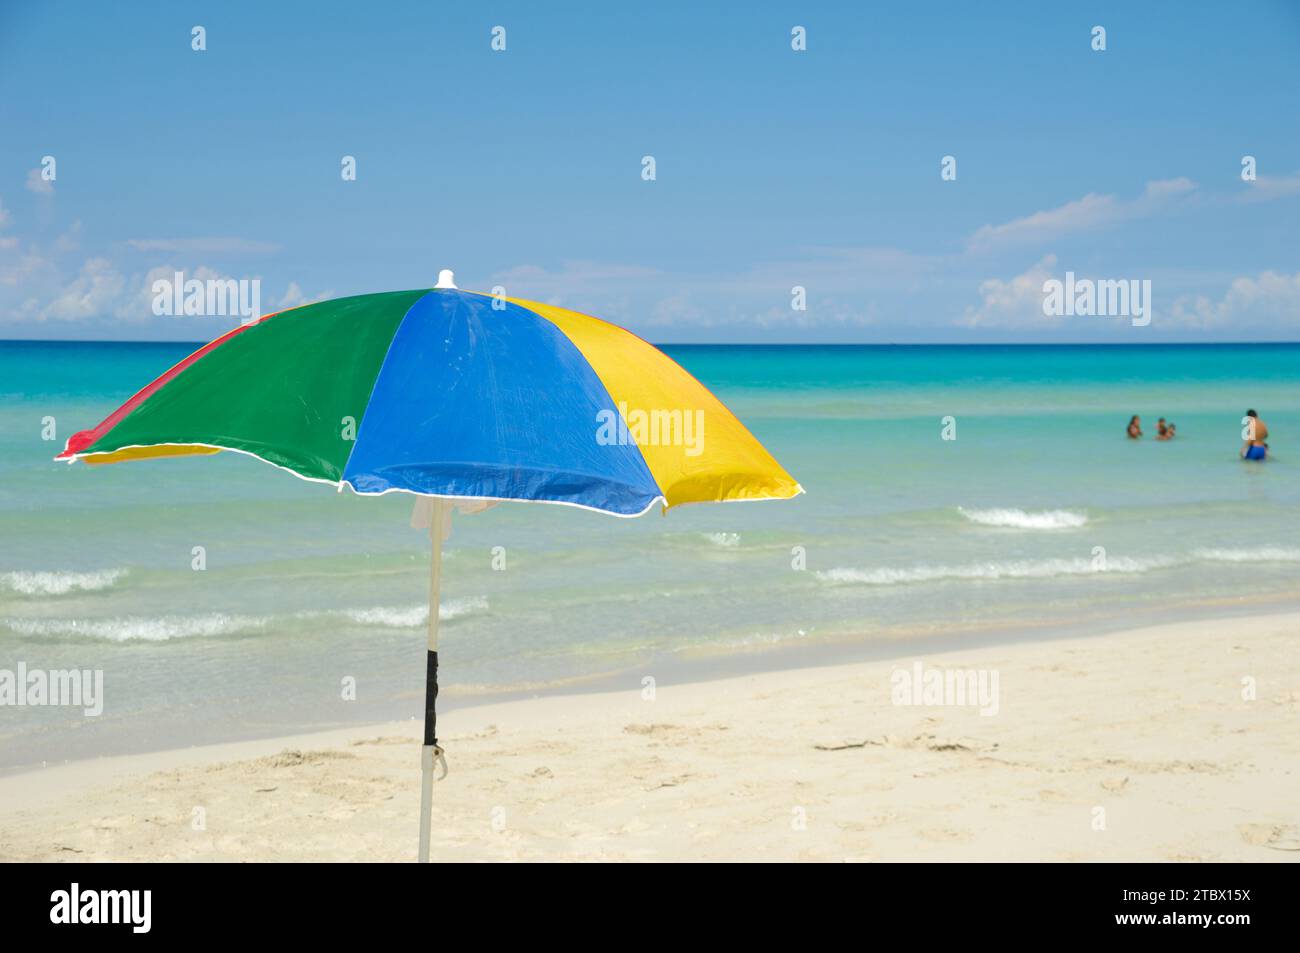 Parasol on exotic beach varadero cuba Stock Photo - Alamy